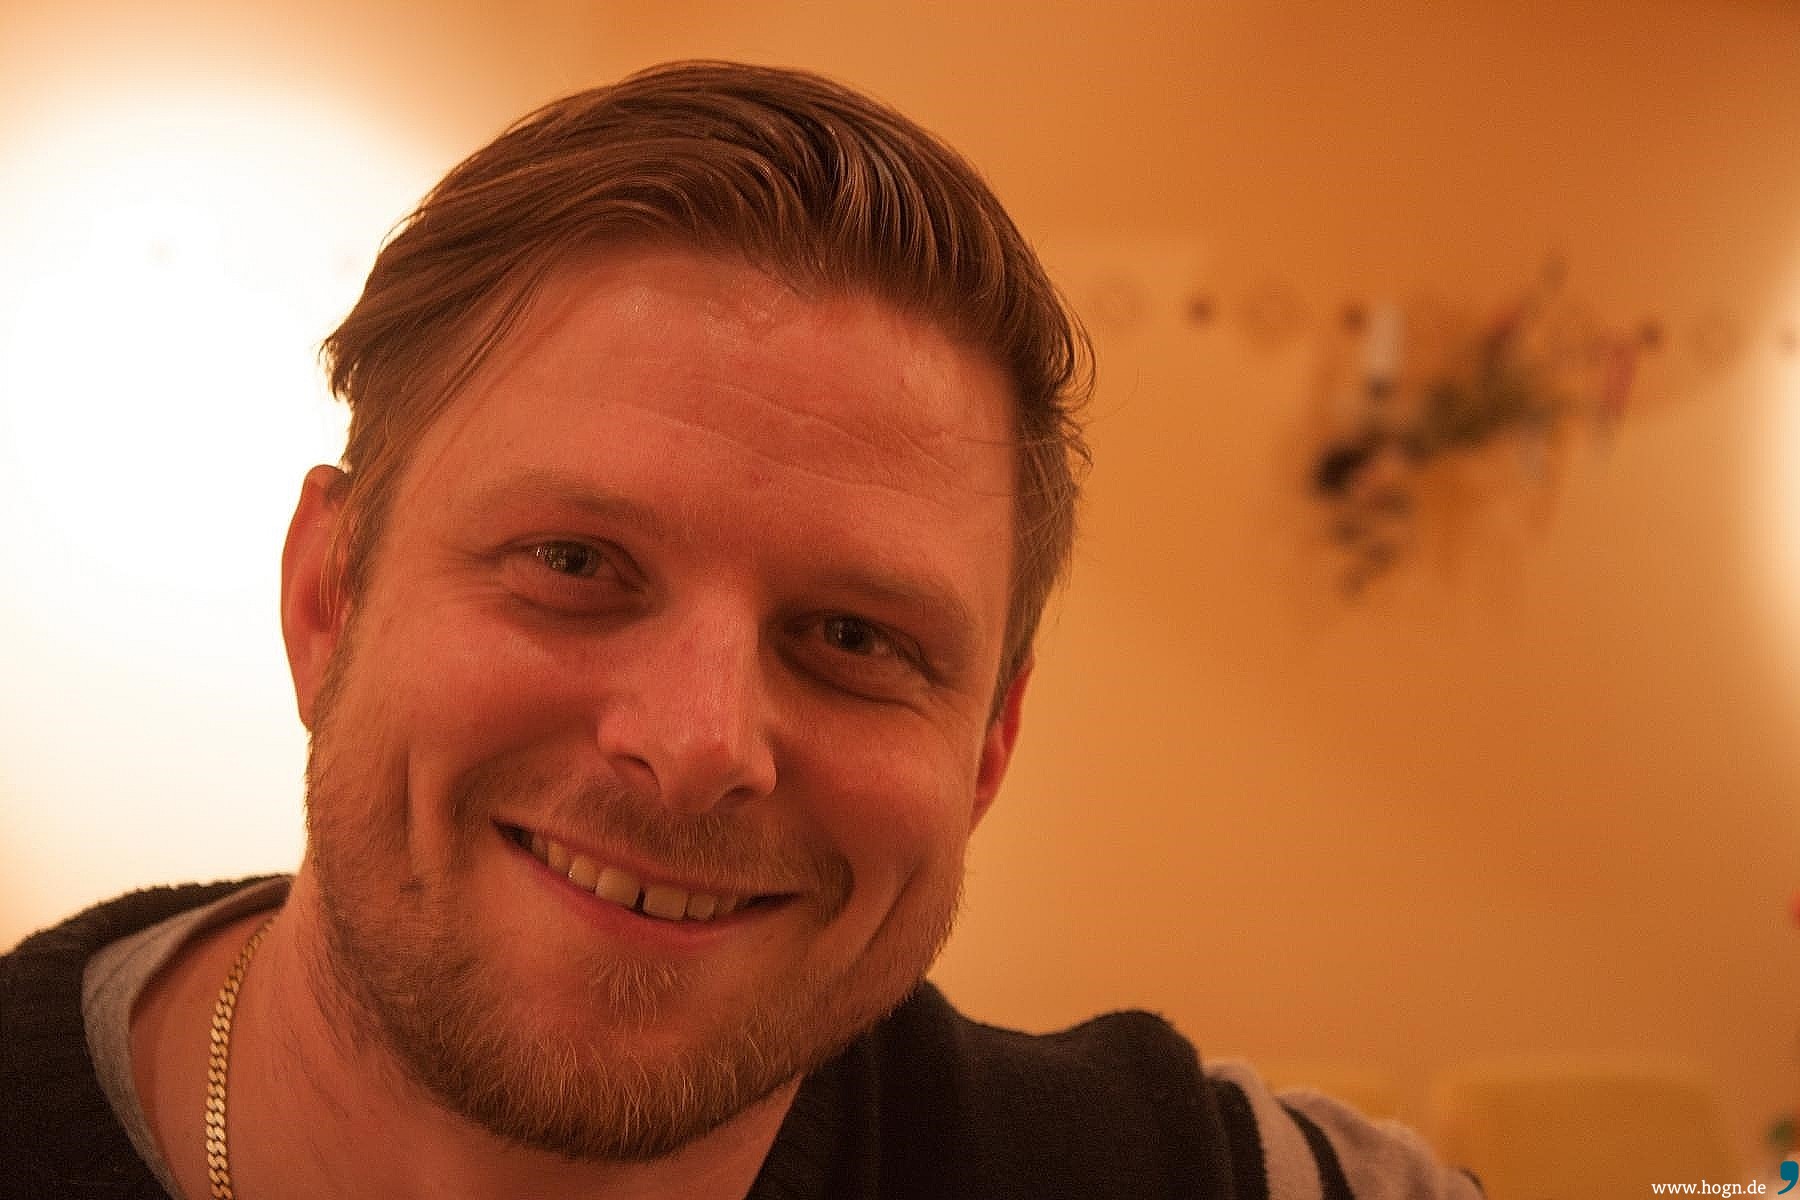 Stephan Hörhammer, 33, Freyung